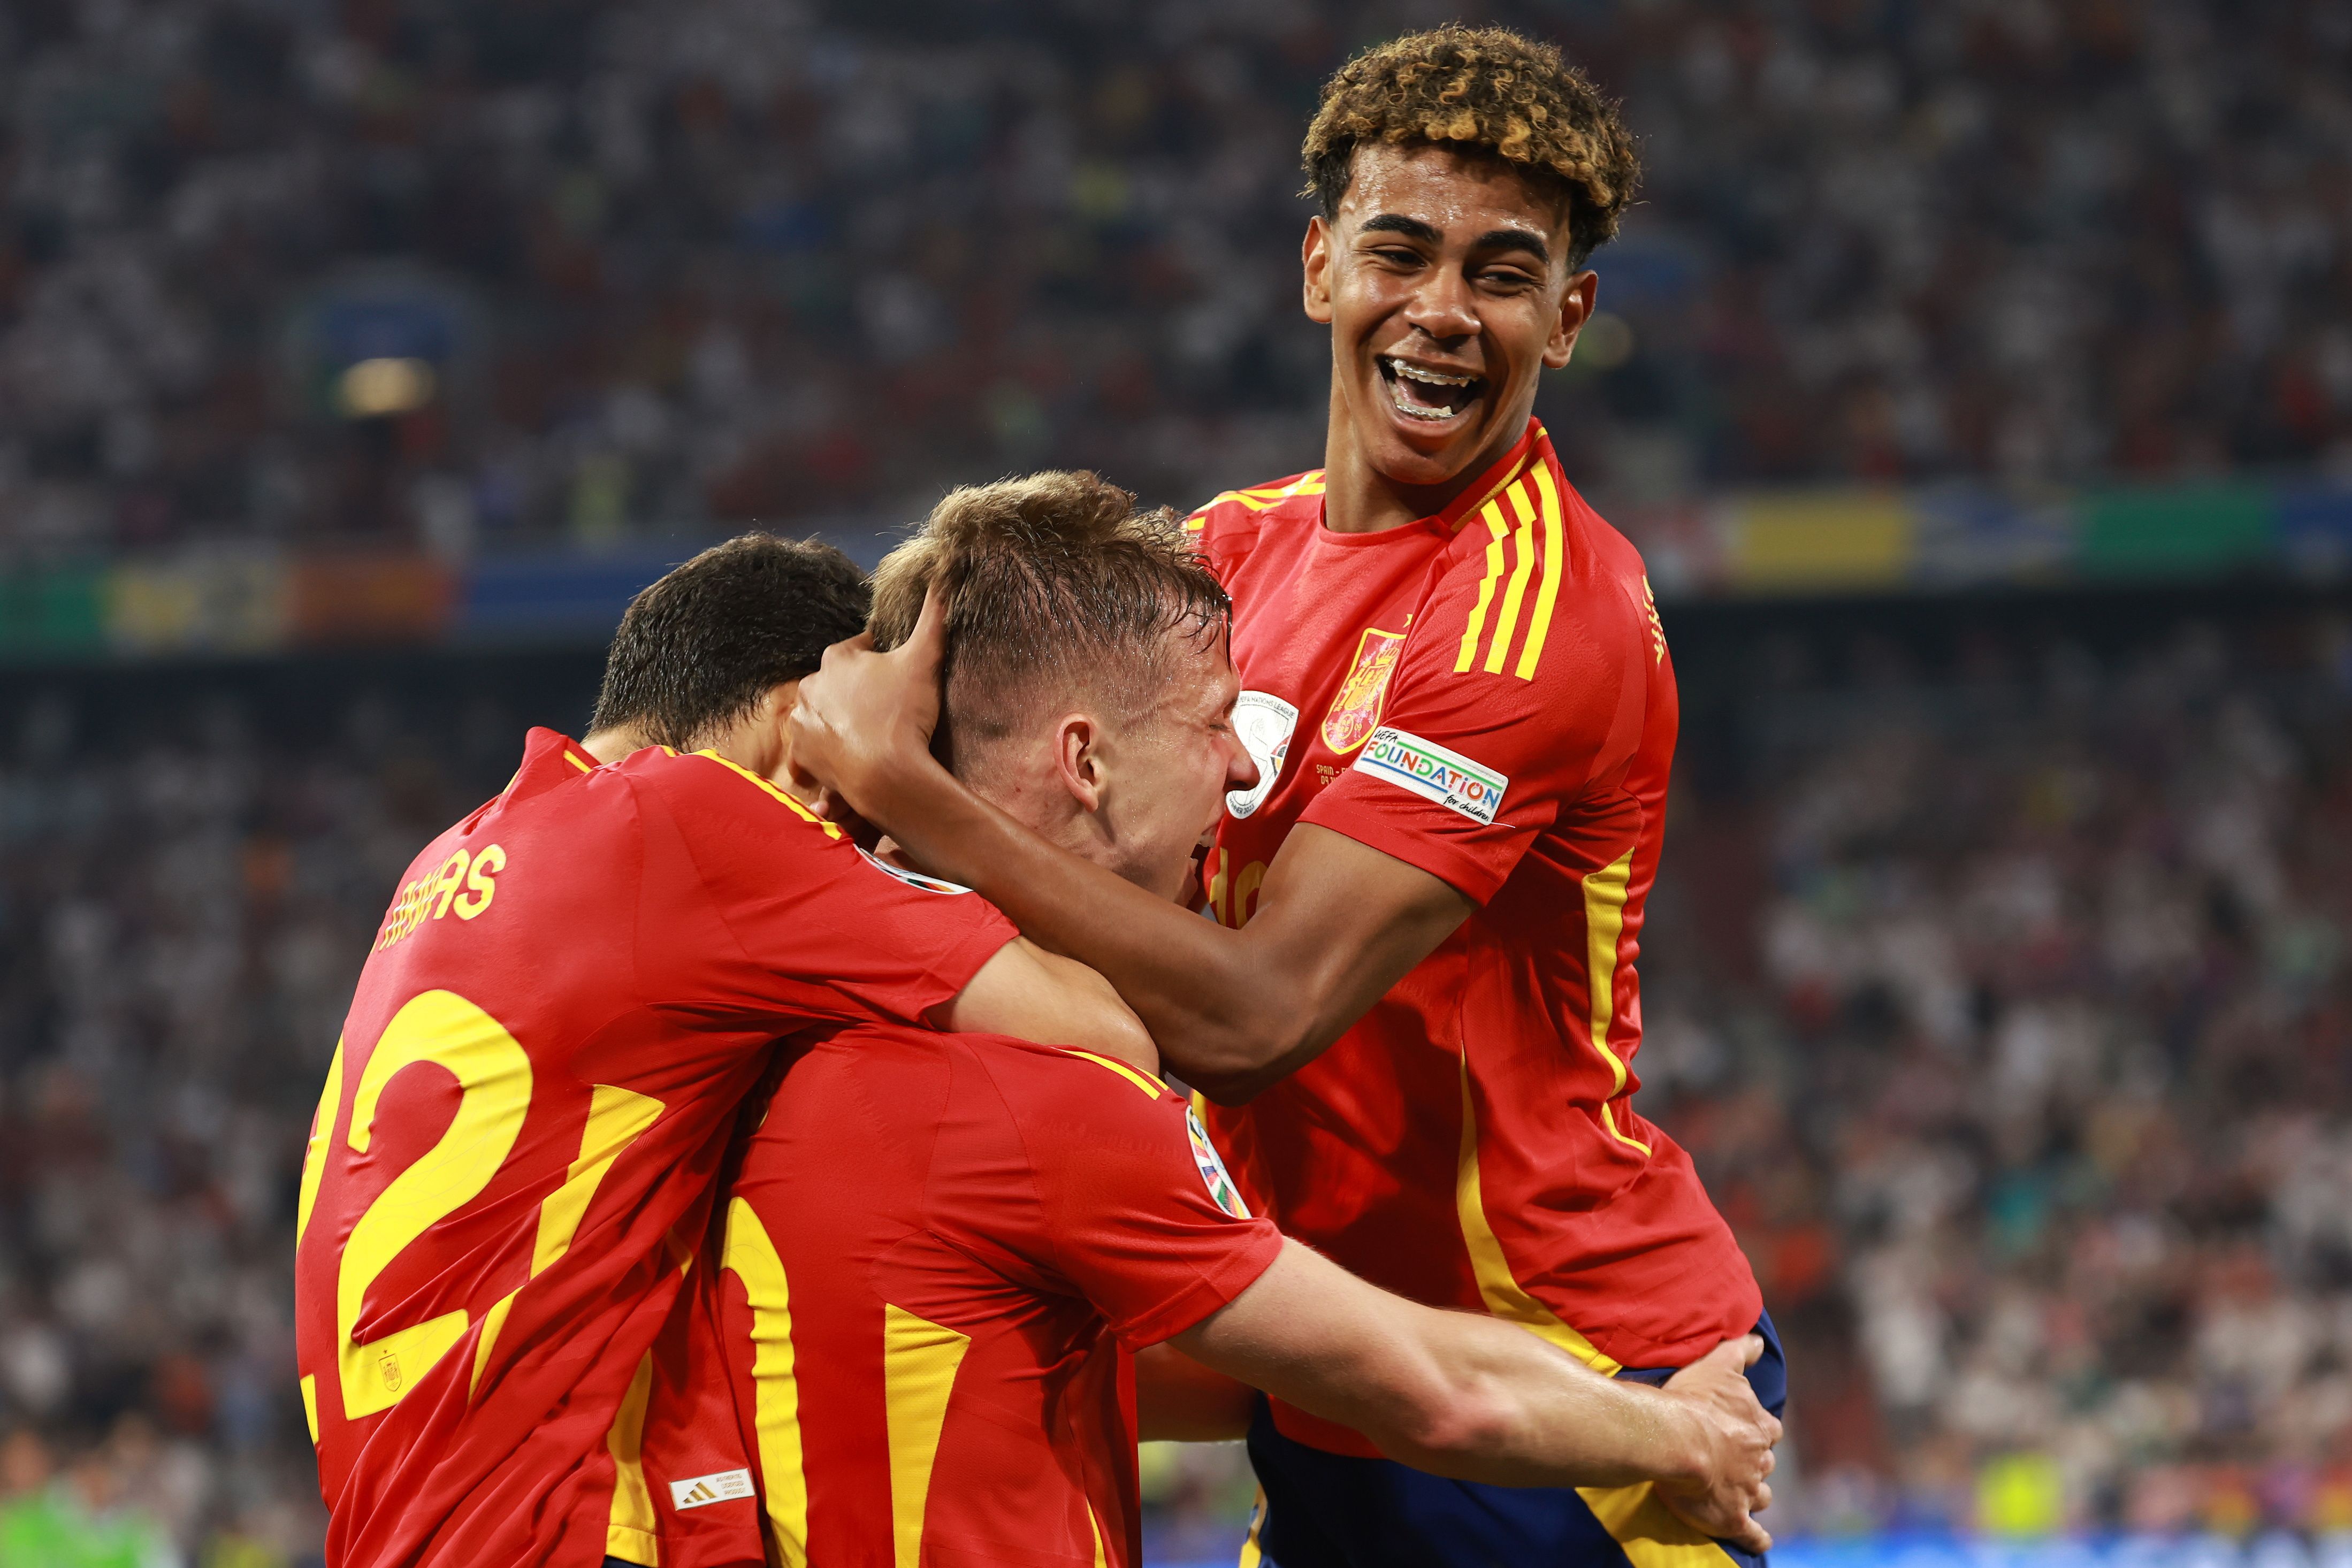 Olmo eta Yamal Espainiako bi golen egileak, bigarren gola ospatzen. CLEMENS BILAN / EFE